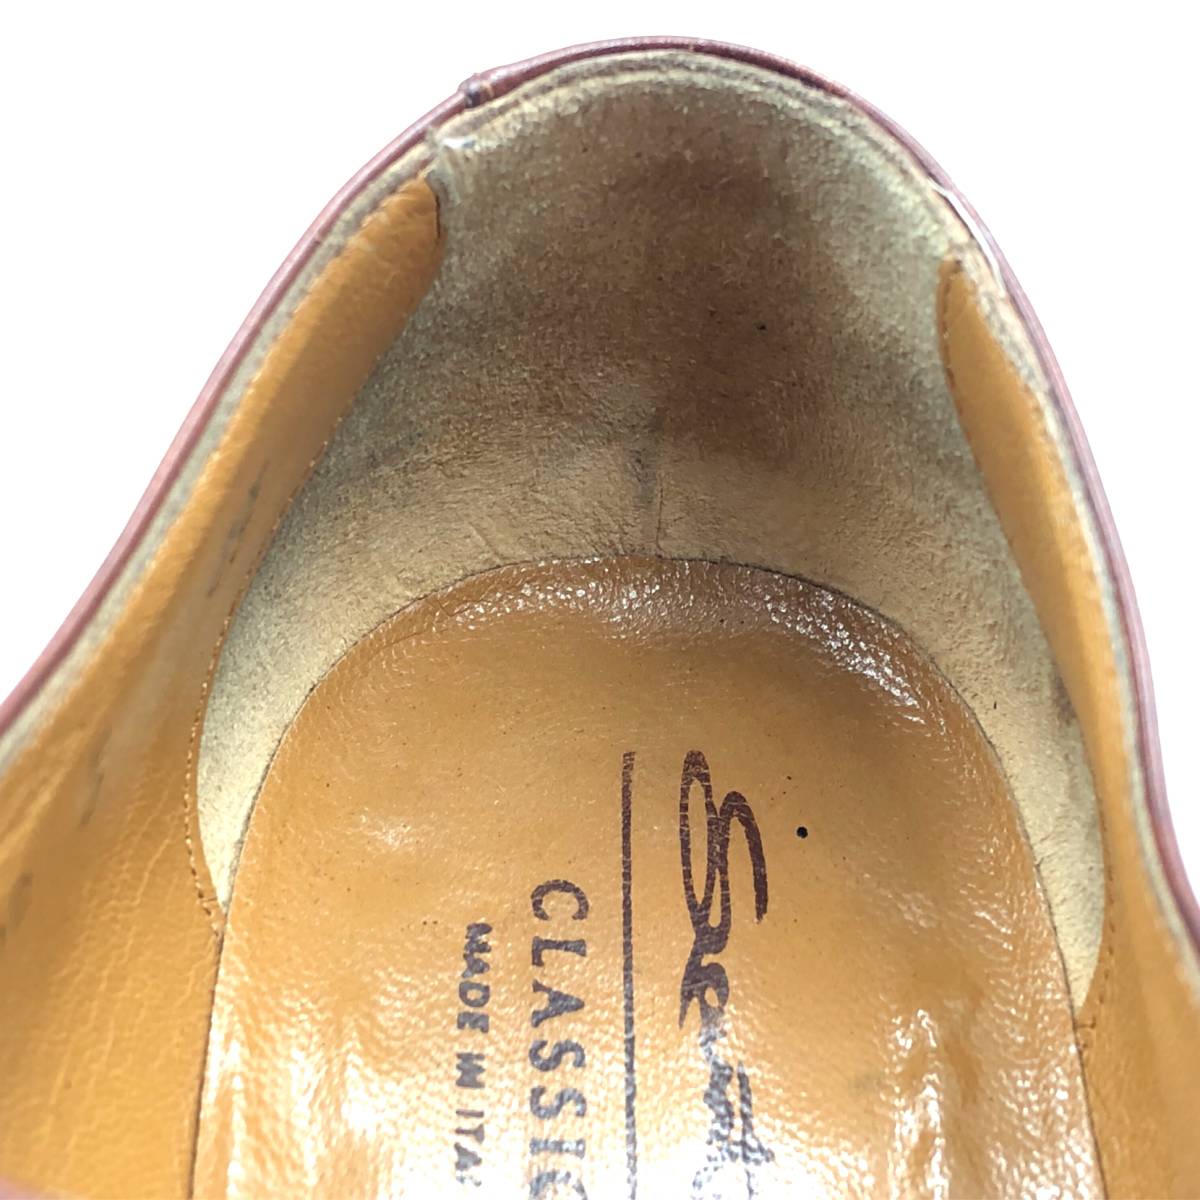 即決 SANTONI サントーニ 24.5cm 6.5 930 メンズ レザーシューズ ストレートチップ 内羽根 茶 ブラウン 革靴 皮靴  ビジネスシューズ